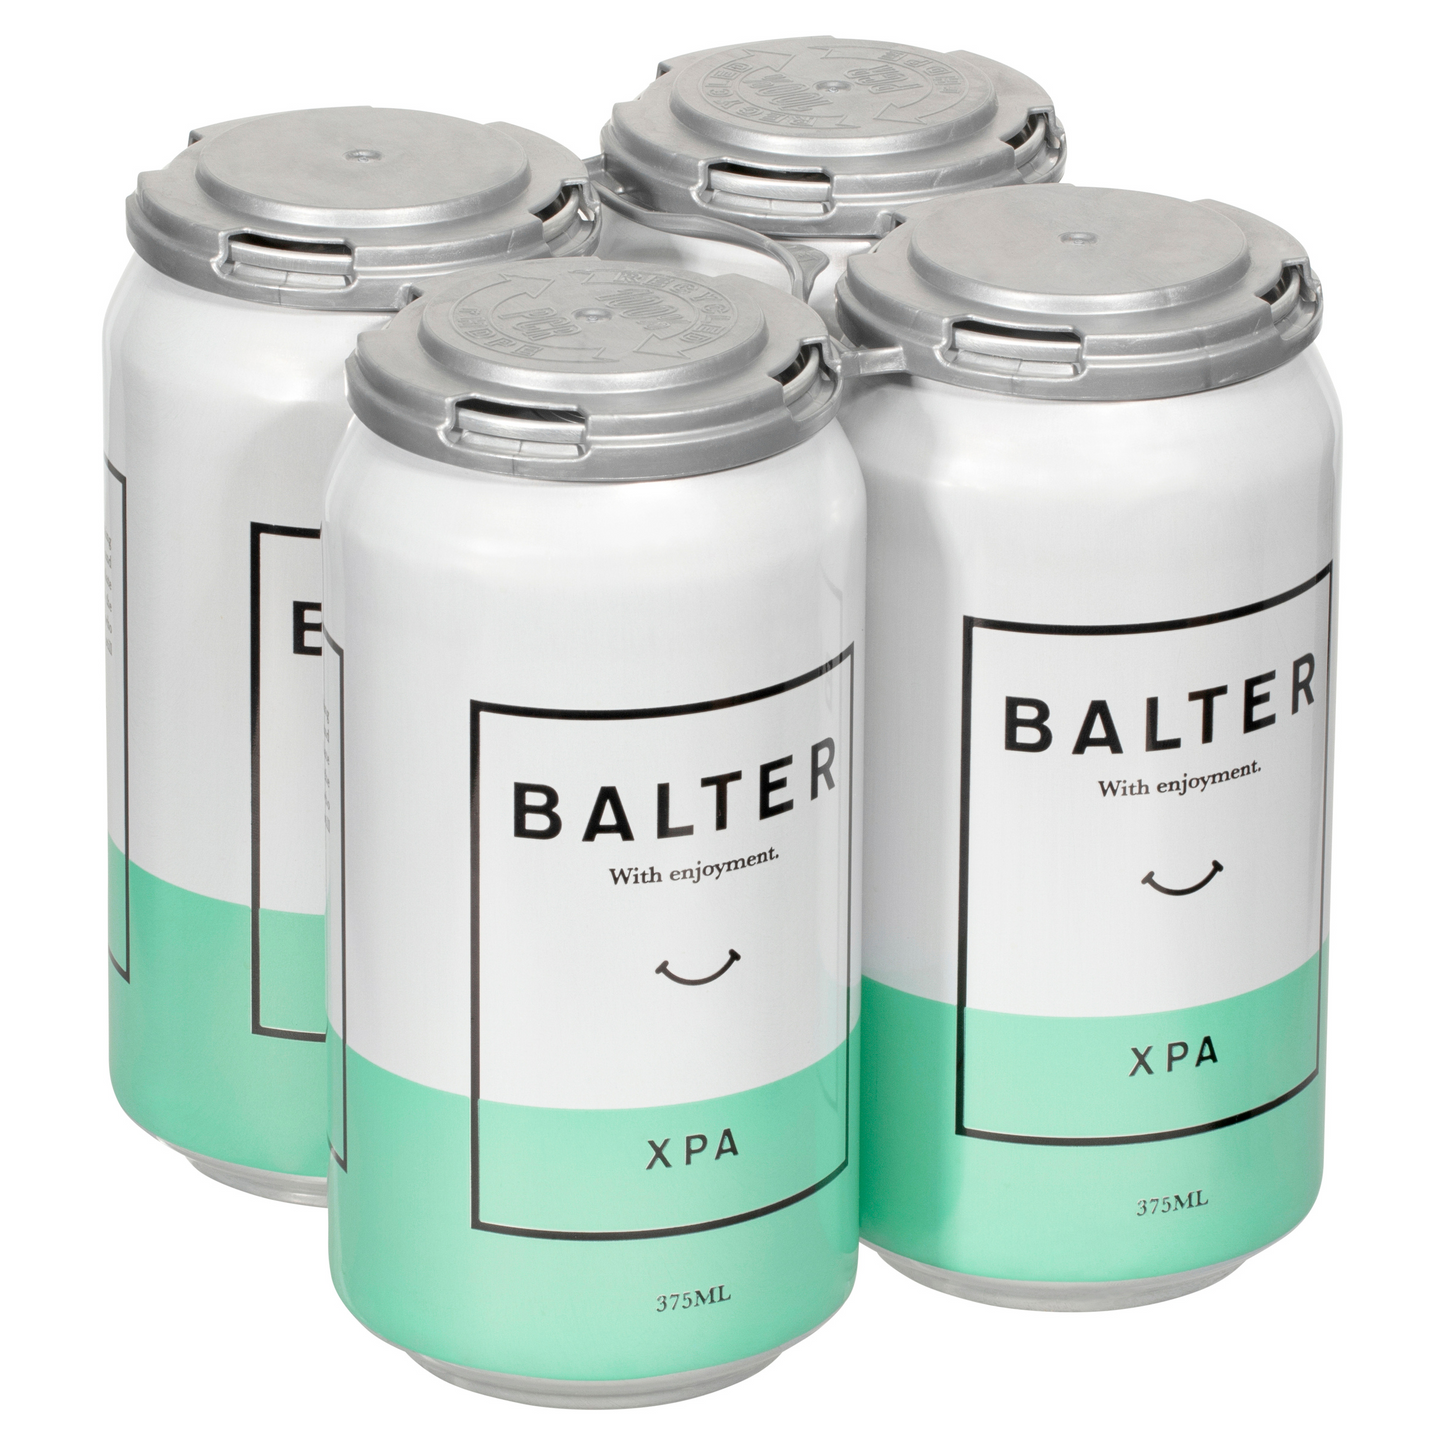 Balter XPA 4 x 375mL Cans